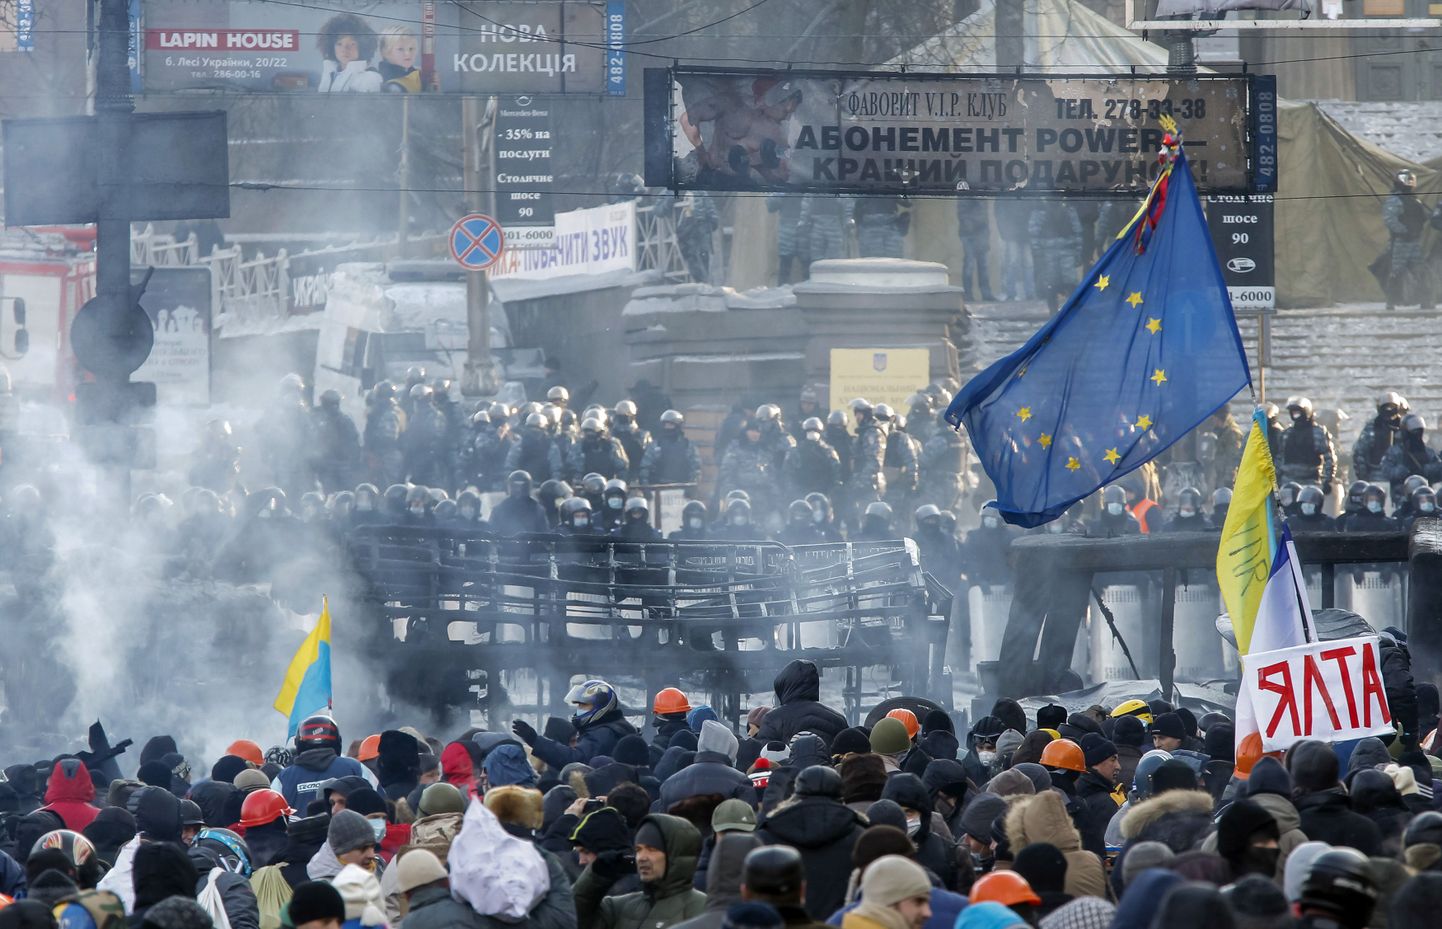 Eurointegratsiooni poolehoidjate ja jõutruktuuride esindajate vastasseis 23. jaanuaril Kiievi kesklinnas.